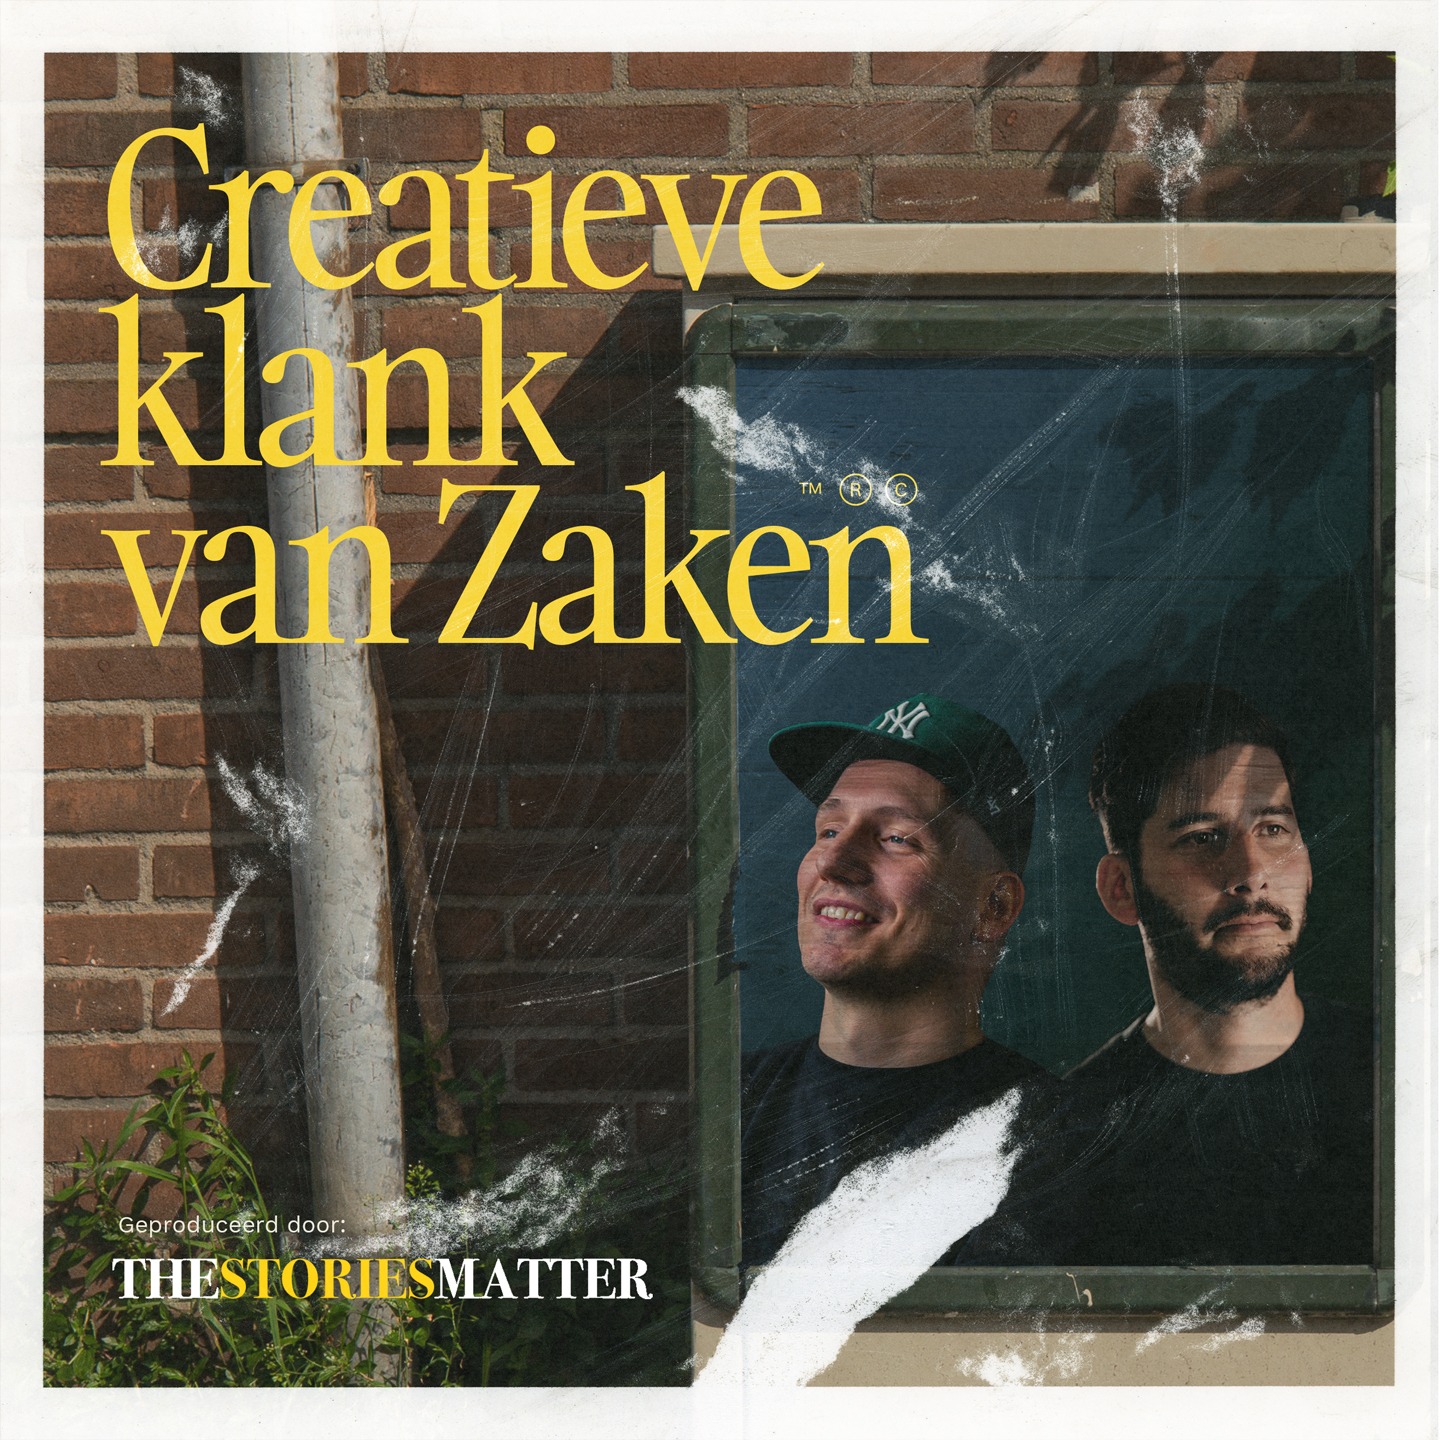 Show artwork for Creatieve klank van Zaken